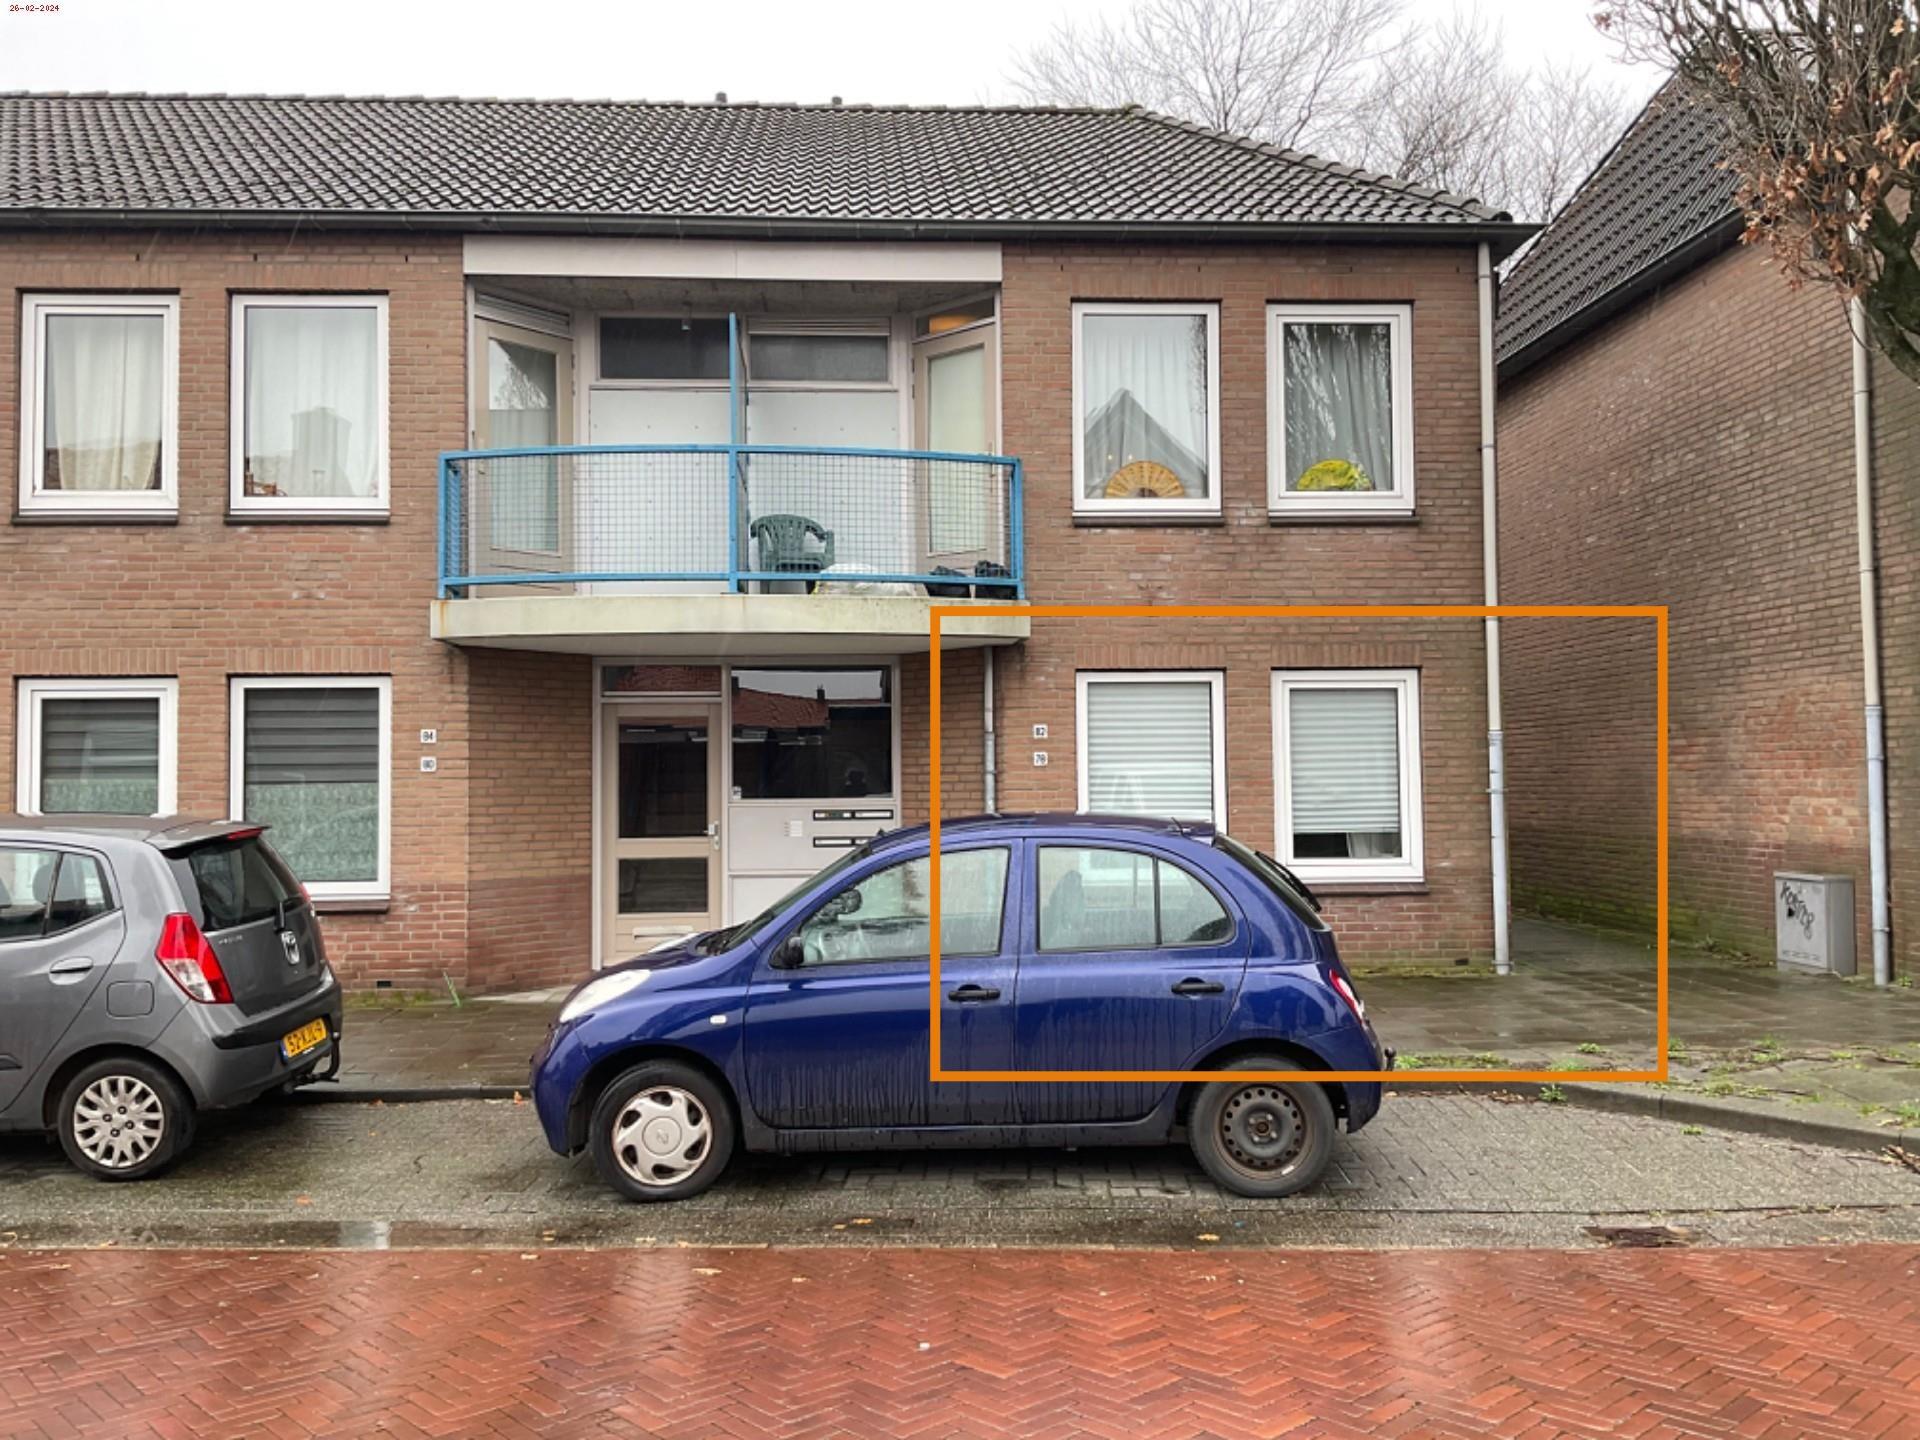 Willemstraat 78, 6882 KE Velp, Nederland